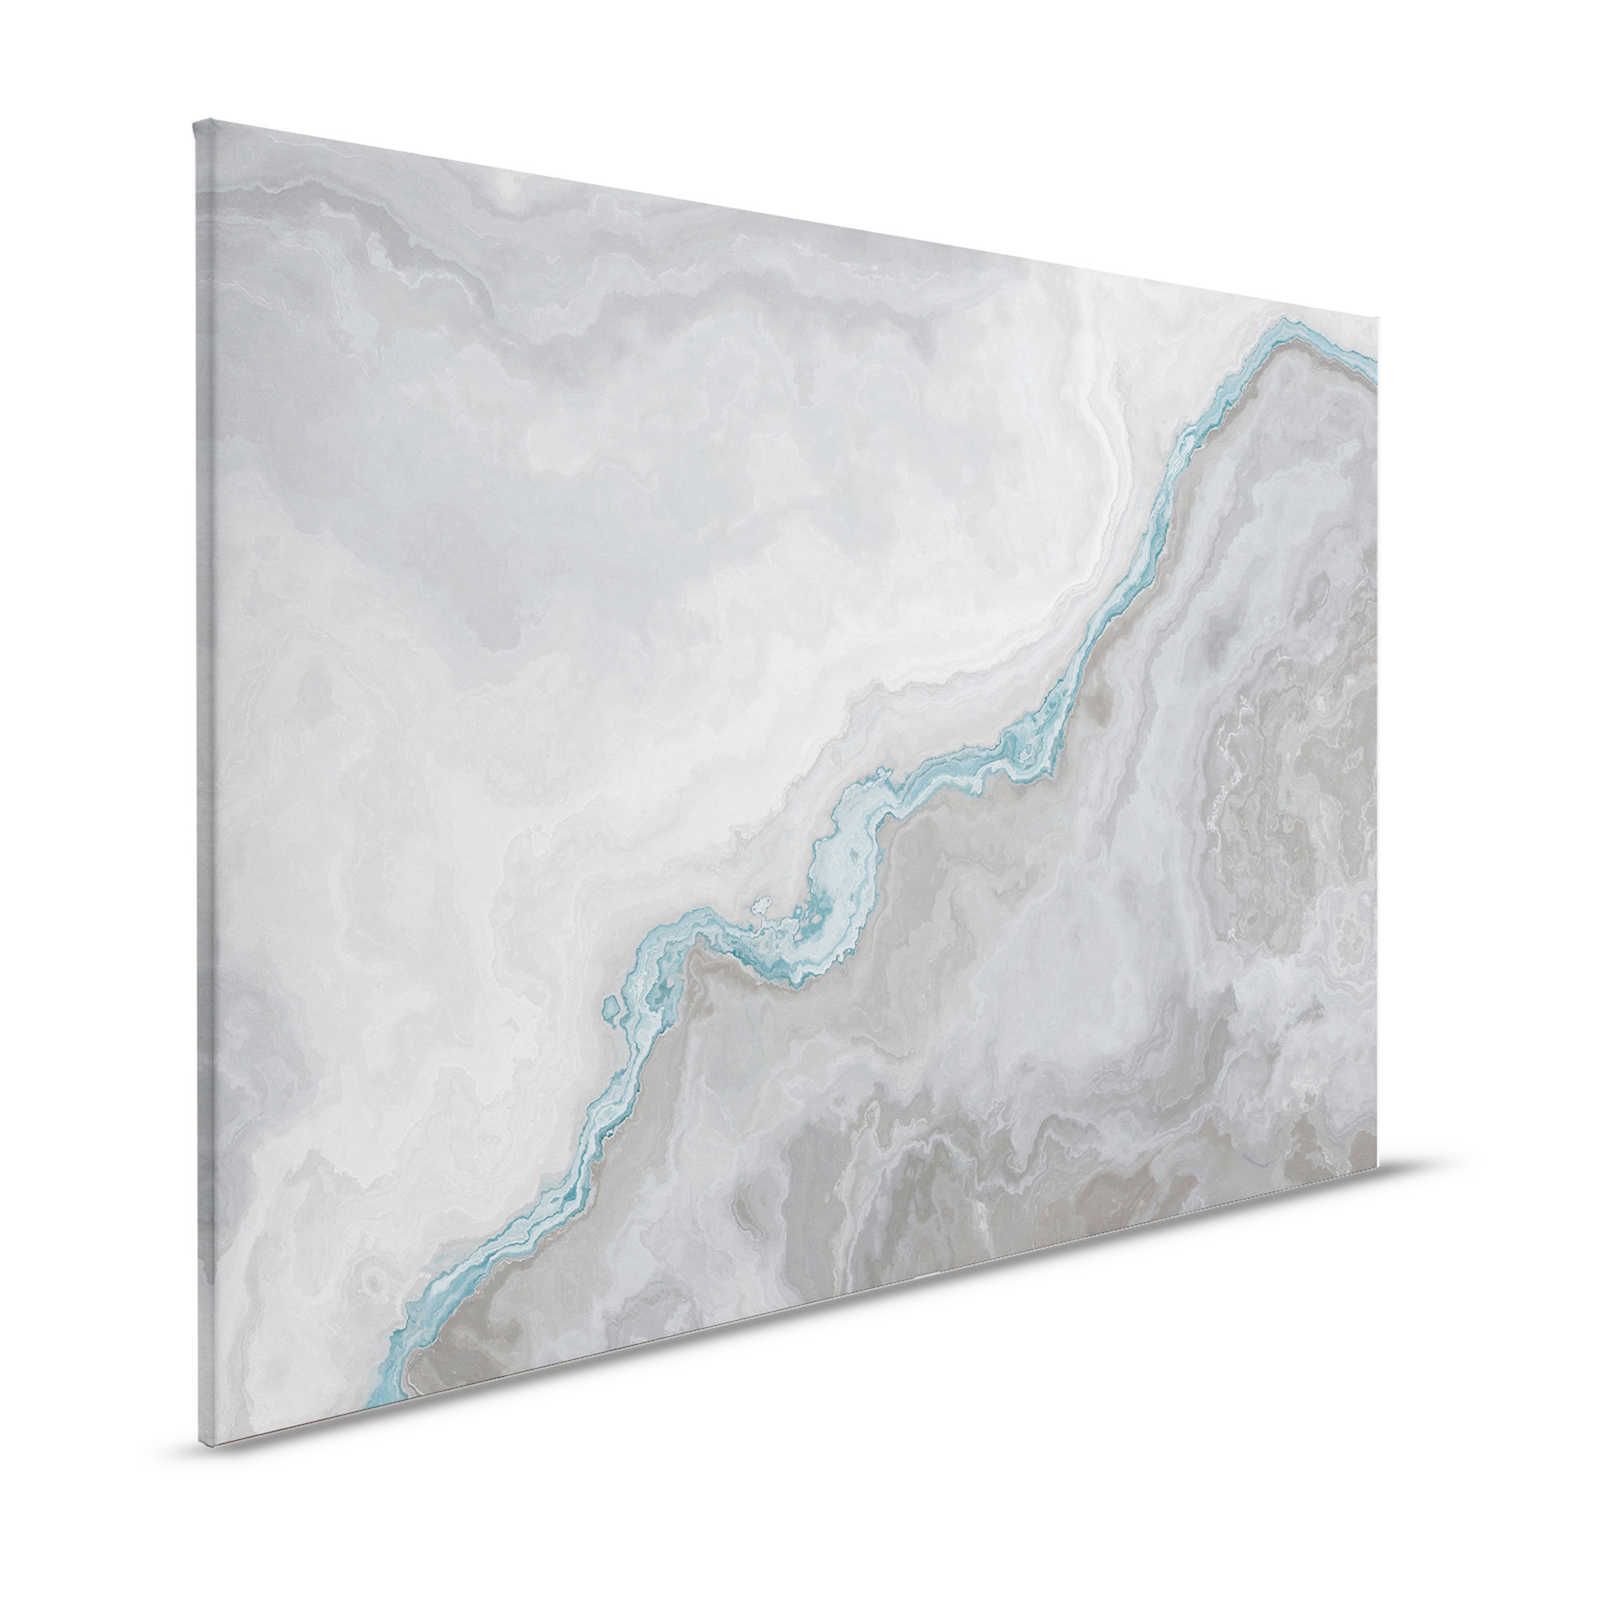 Canvas painting marbled with quartz optics - 1.20 m x 0.80 m
